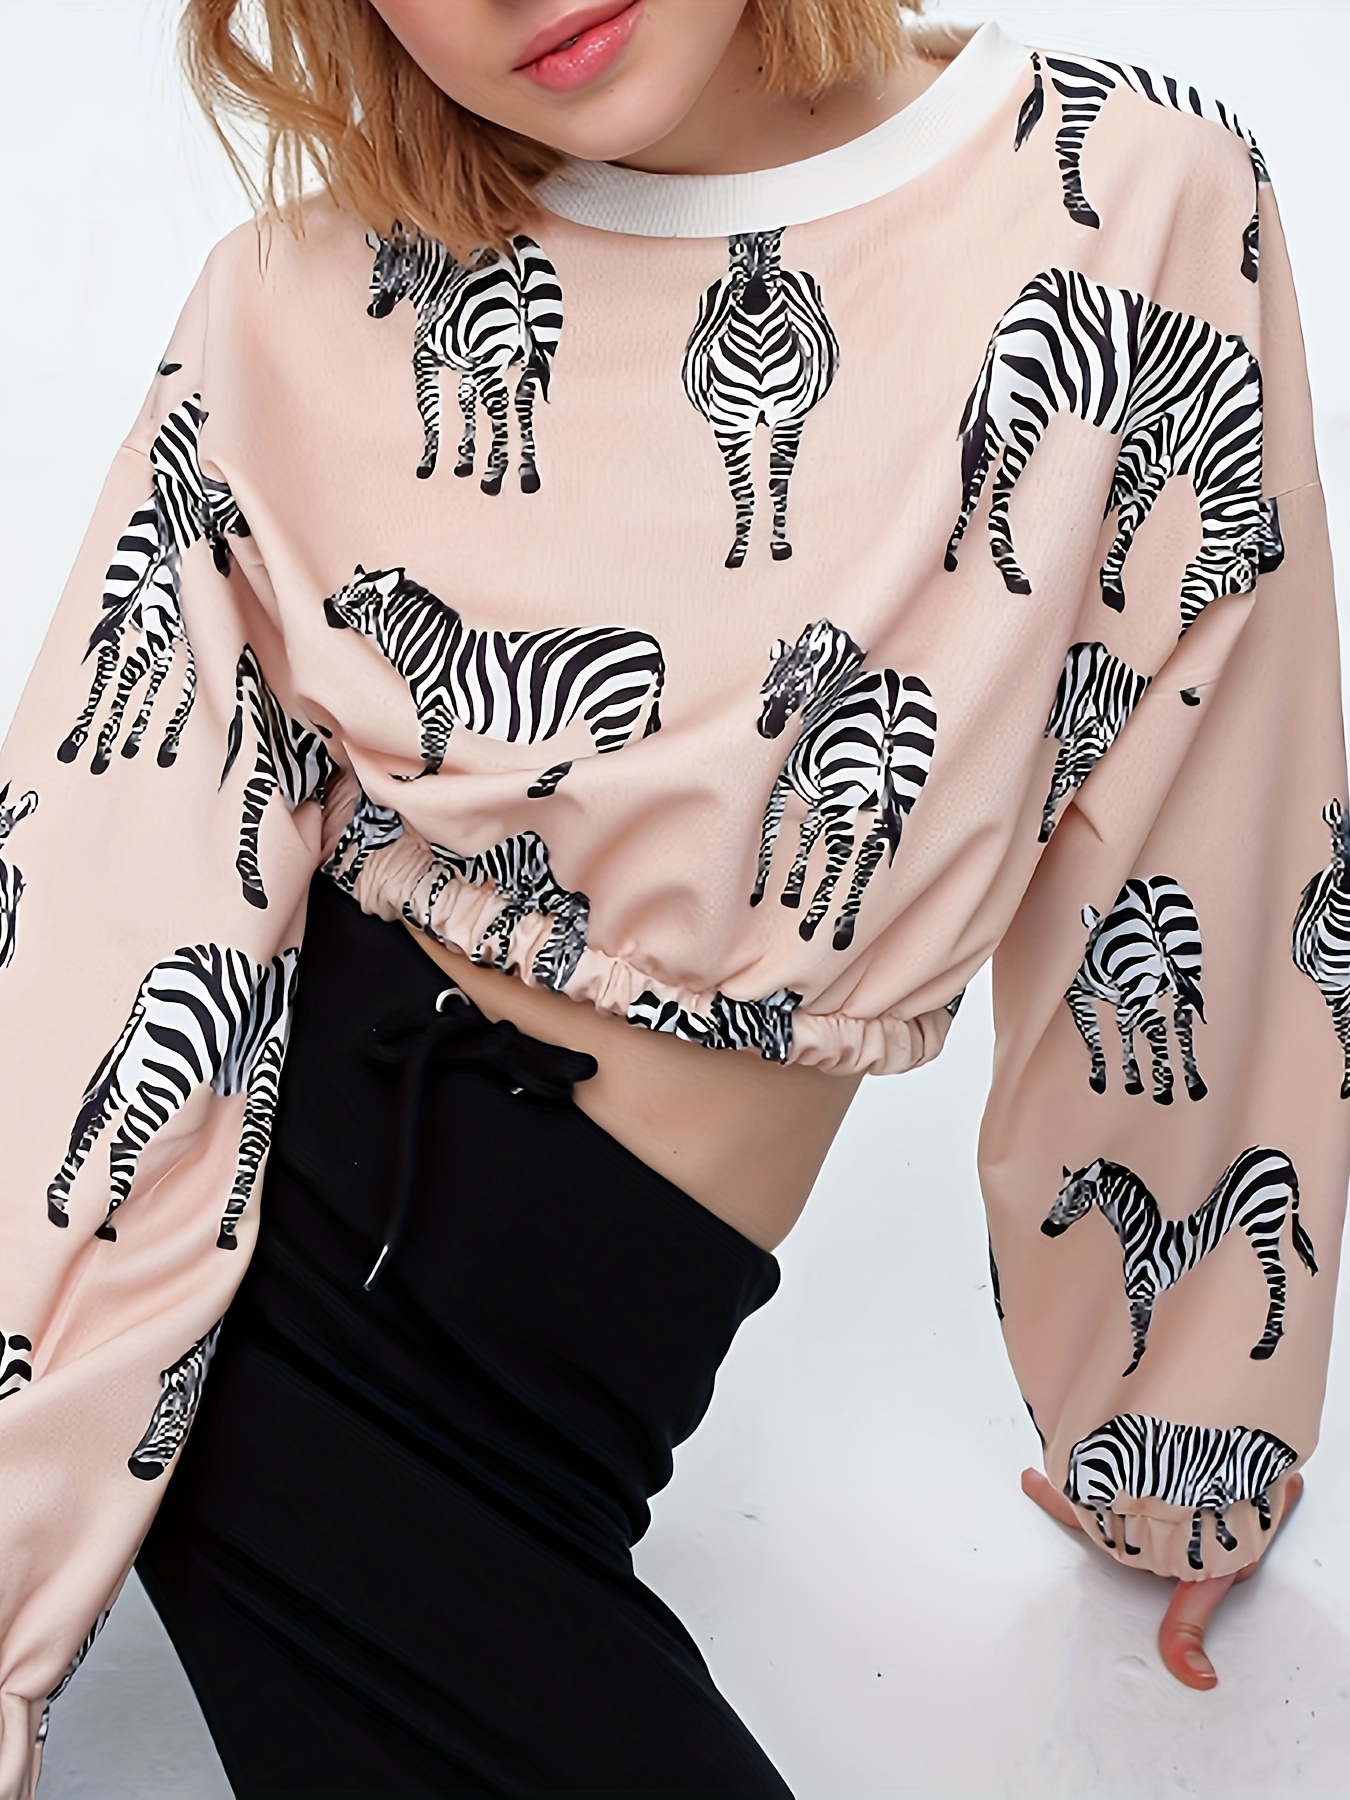 Moda zebra: super tendência de 2022 · Anatomia de uma leitora  Womens tops  dressy, Teenage fashion outfits, Blouses for women